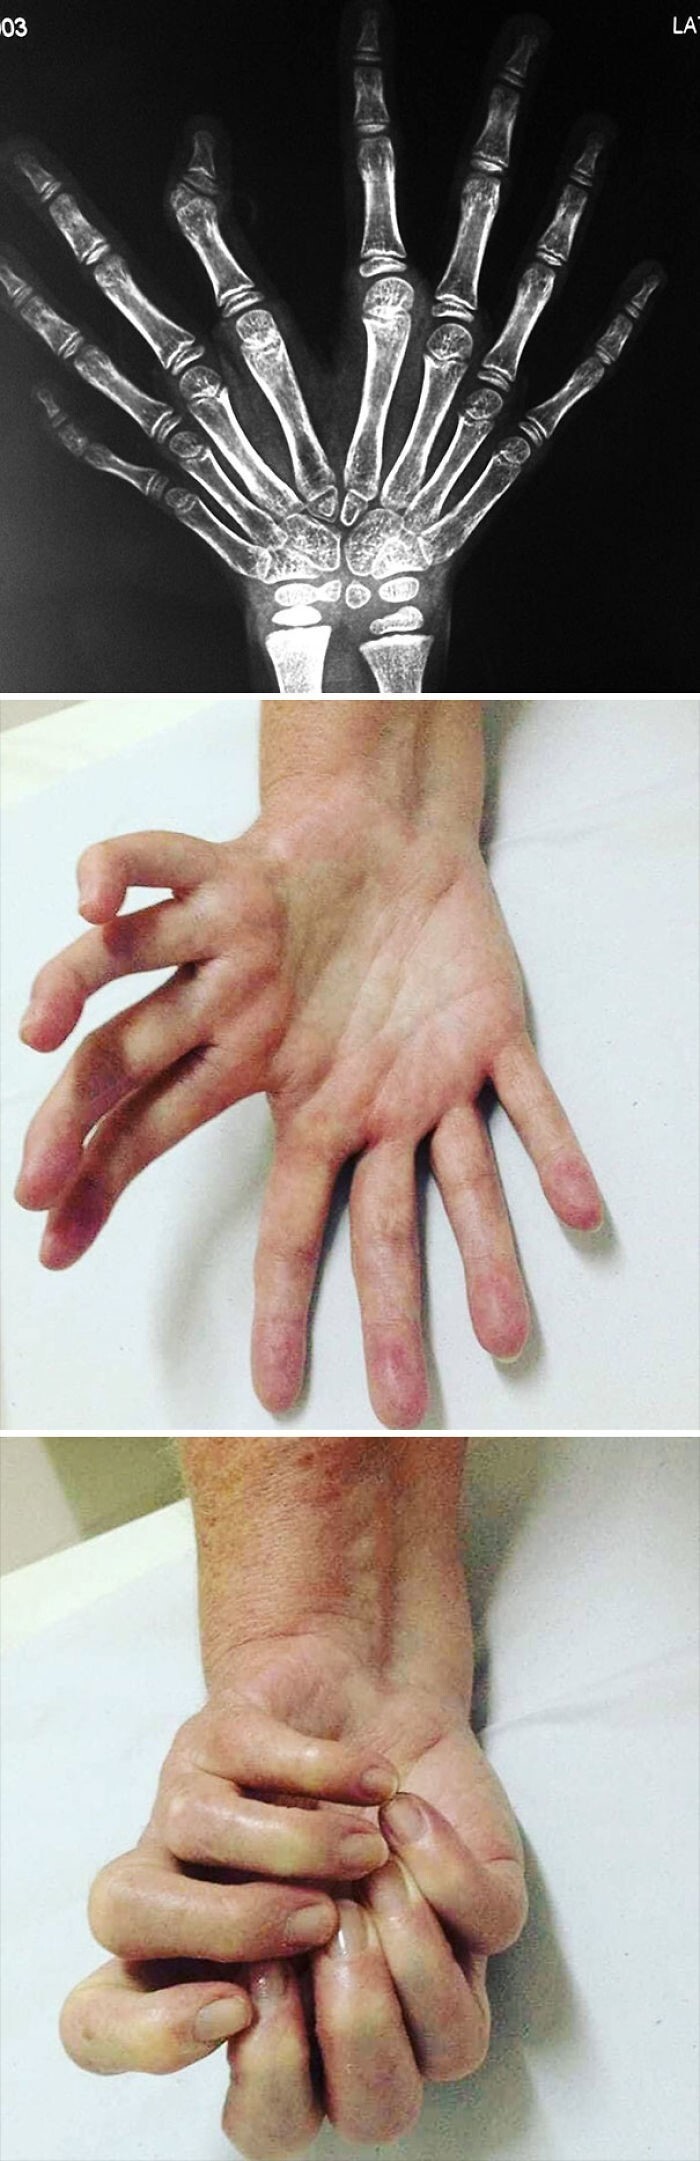 Ульнарная димелия или синдром зеркальной руки